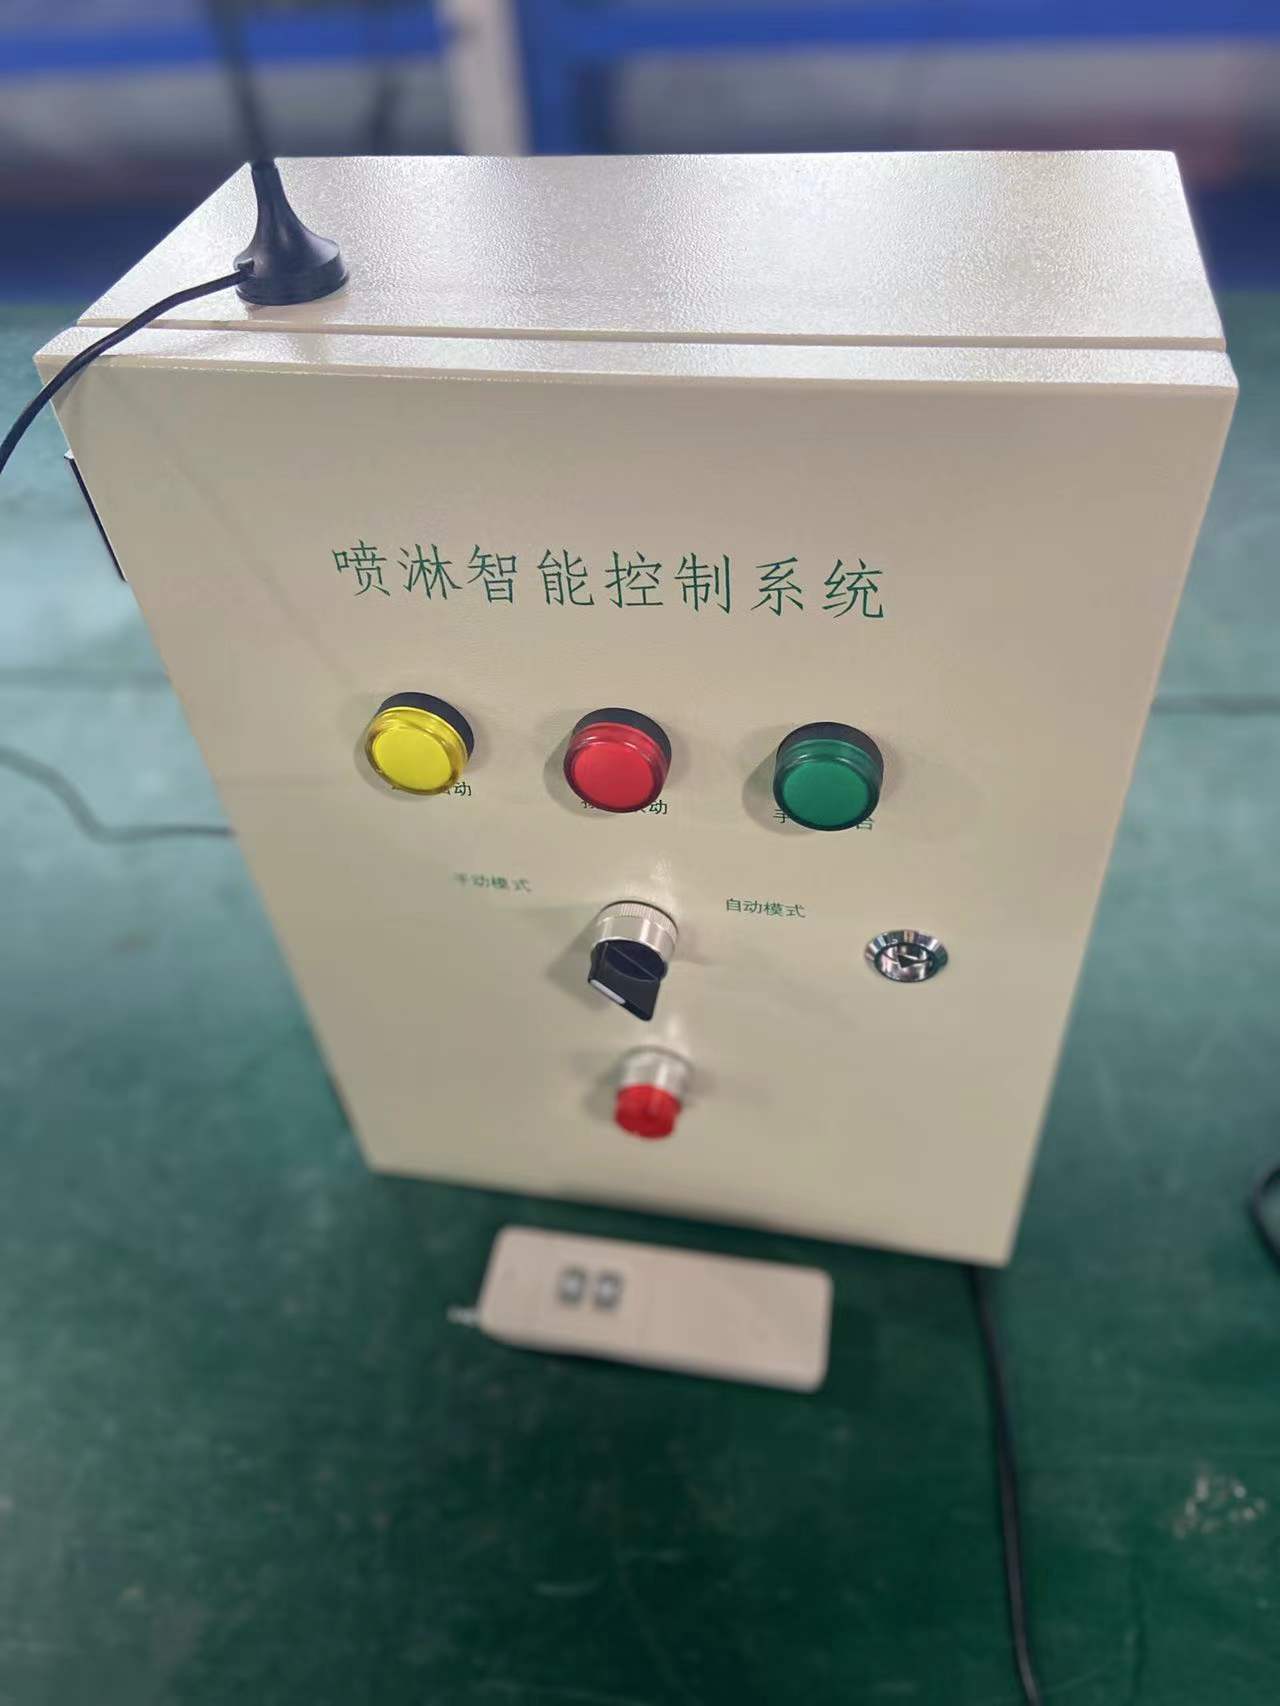 衢州喷淋控制器生产厂家 安徽赛芙智能科技有限公司